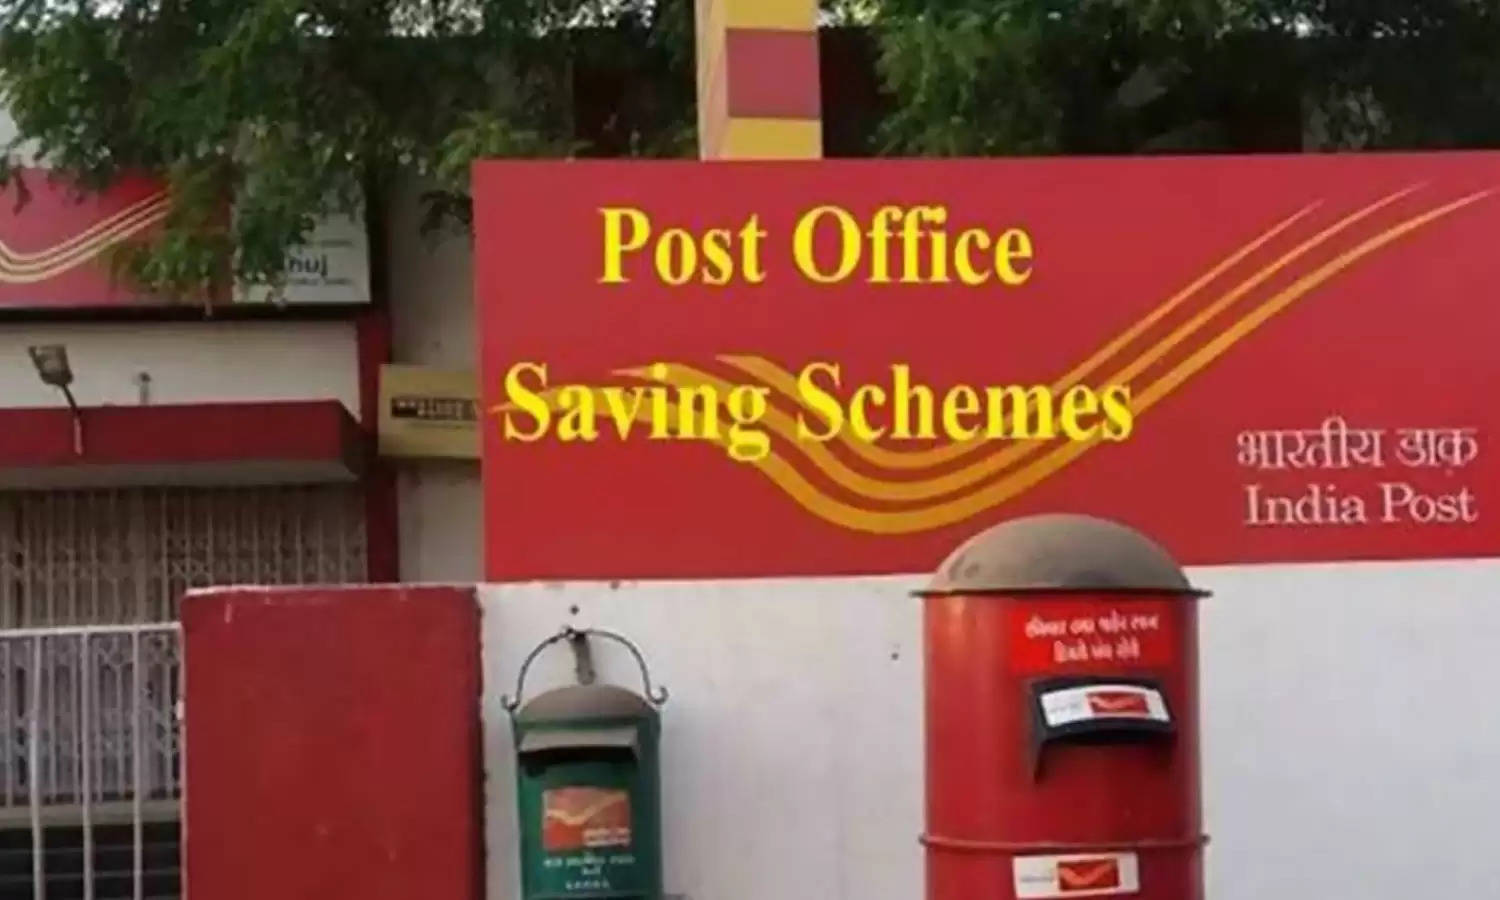 Post Office Scheme: सिर्फ 50 रुपए की बचत में पाएं 35 लाख का रिटर्न, पढ़ें पूरी डिटेल